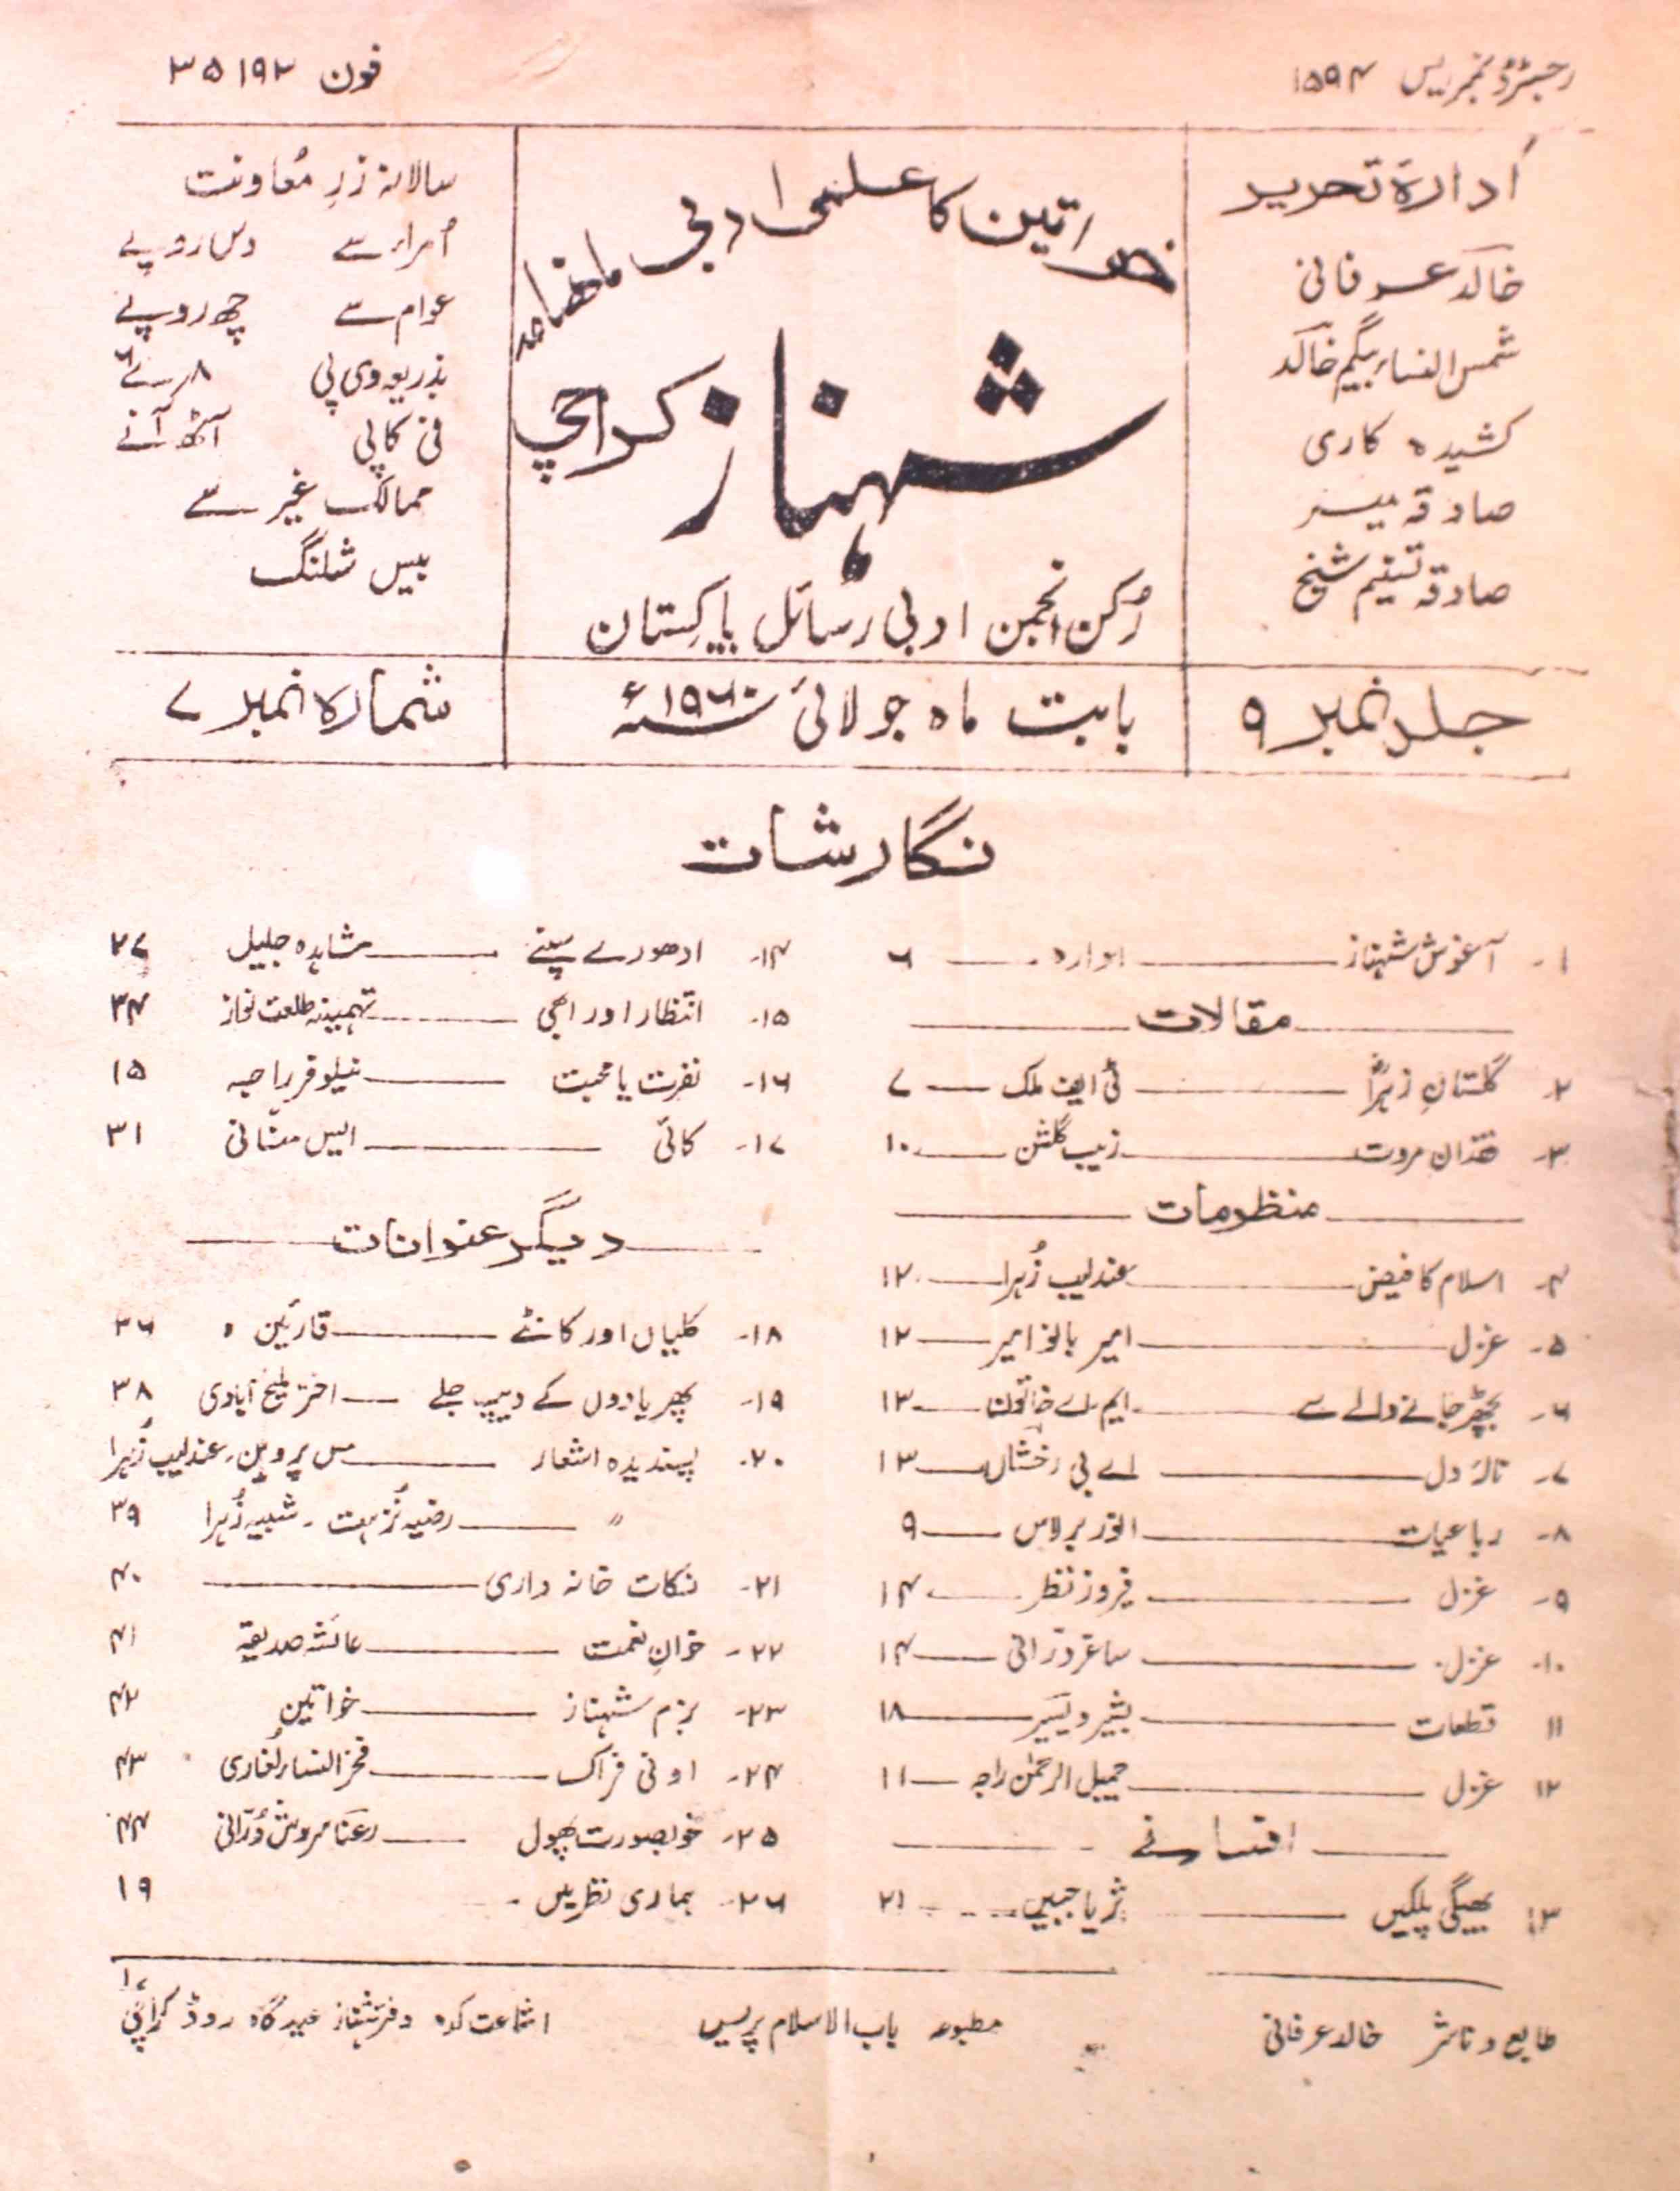 shahnaz-shumara-number-007-khalid-irfani-magazines